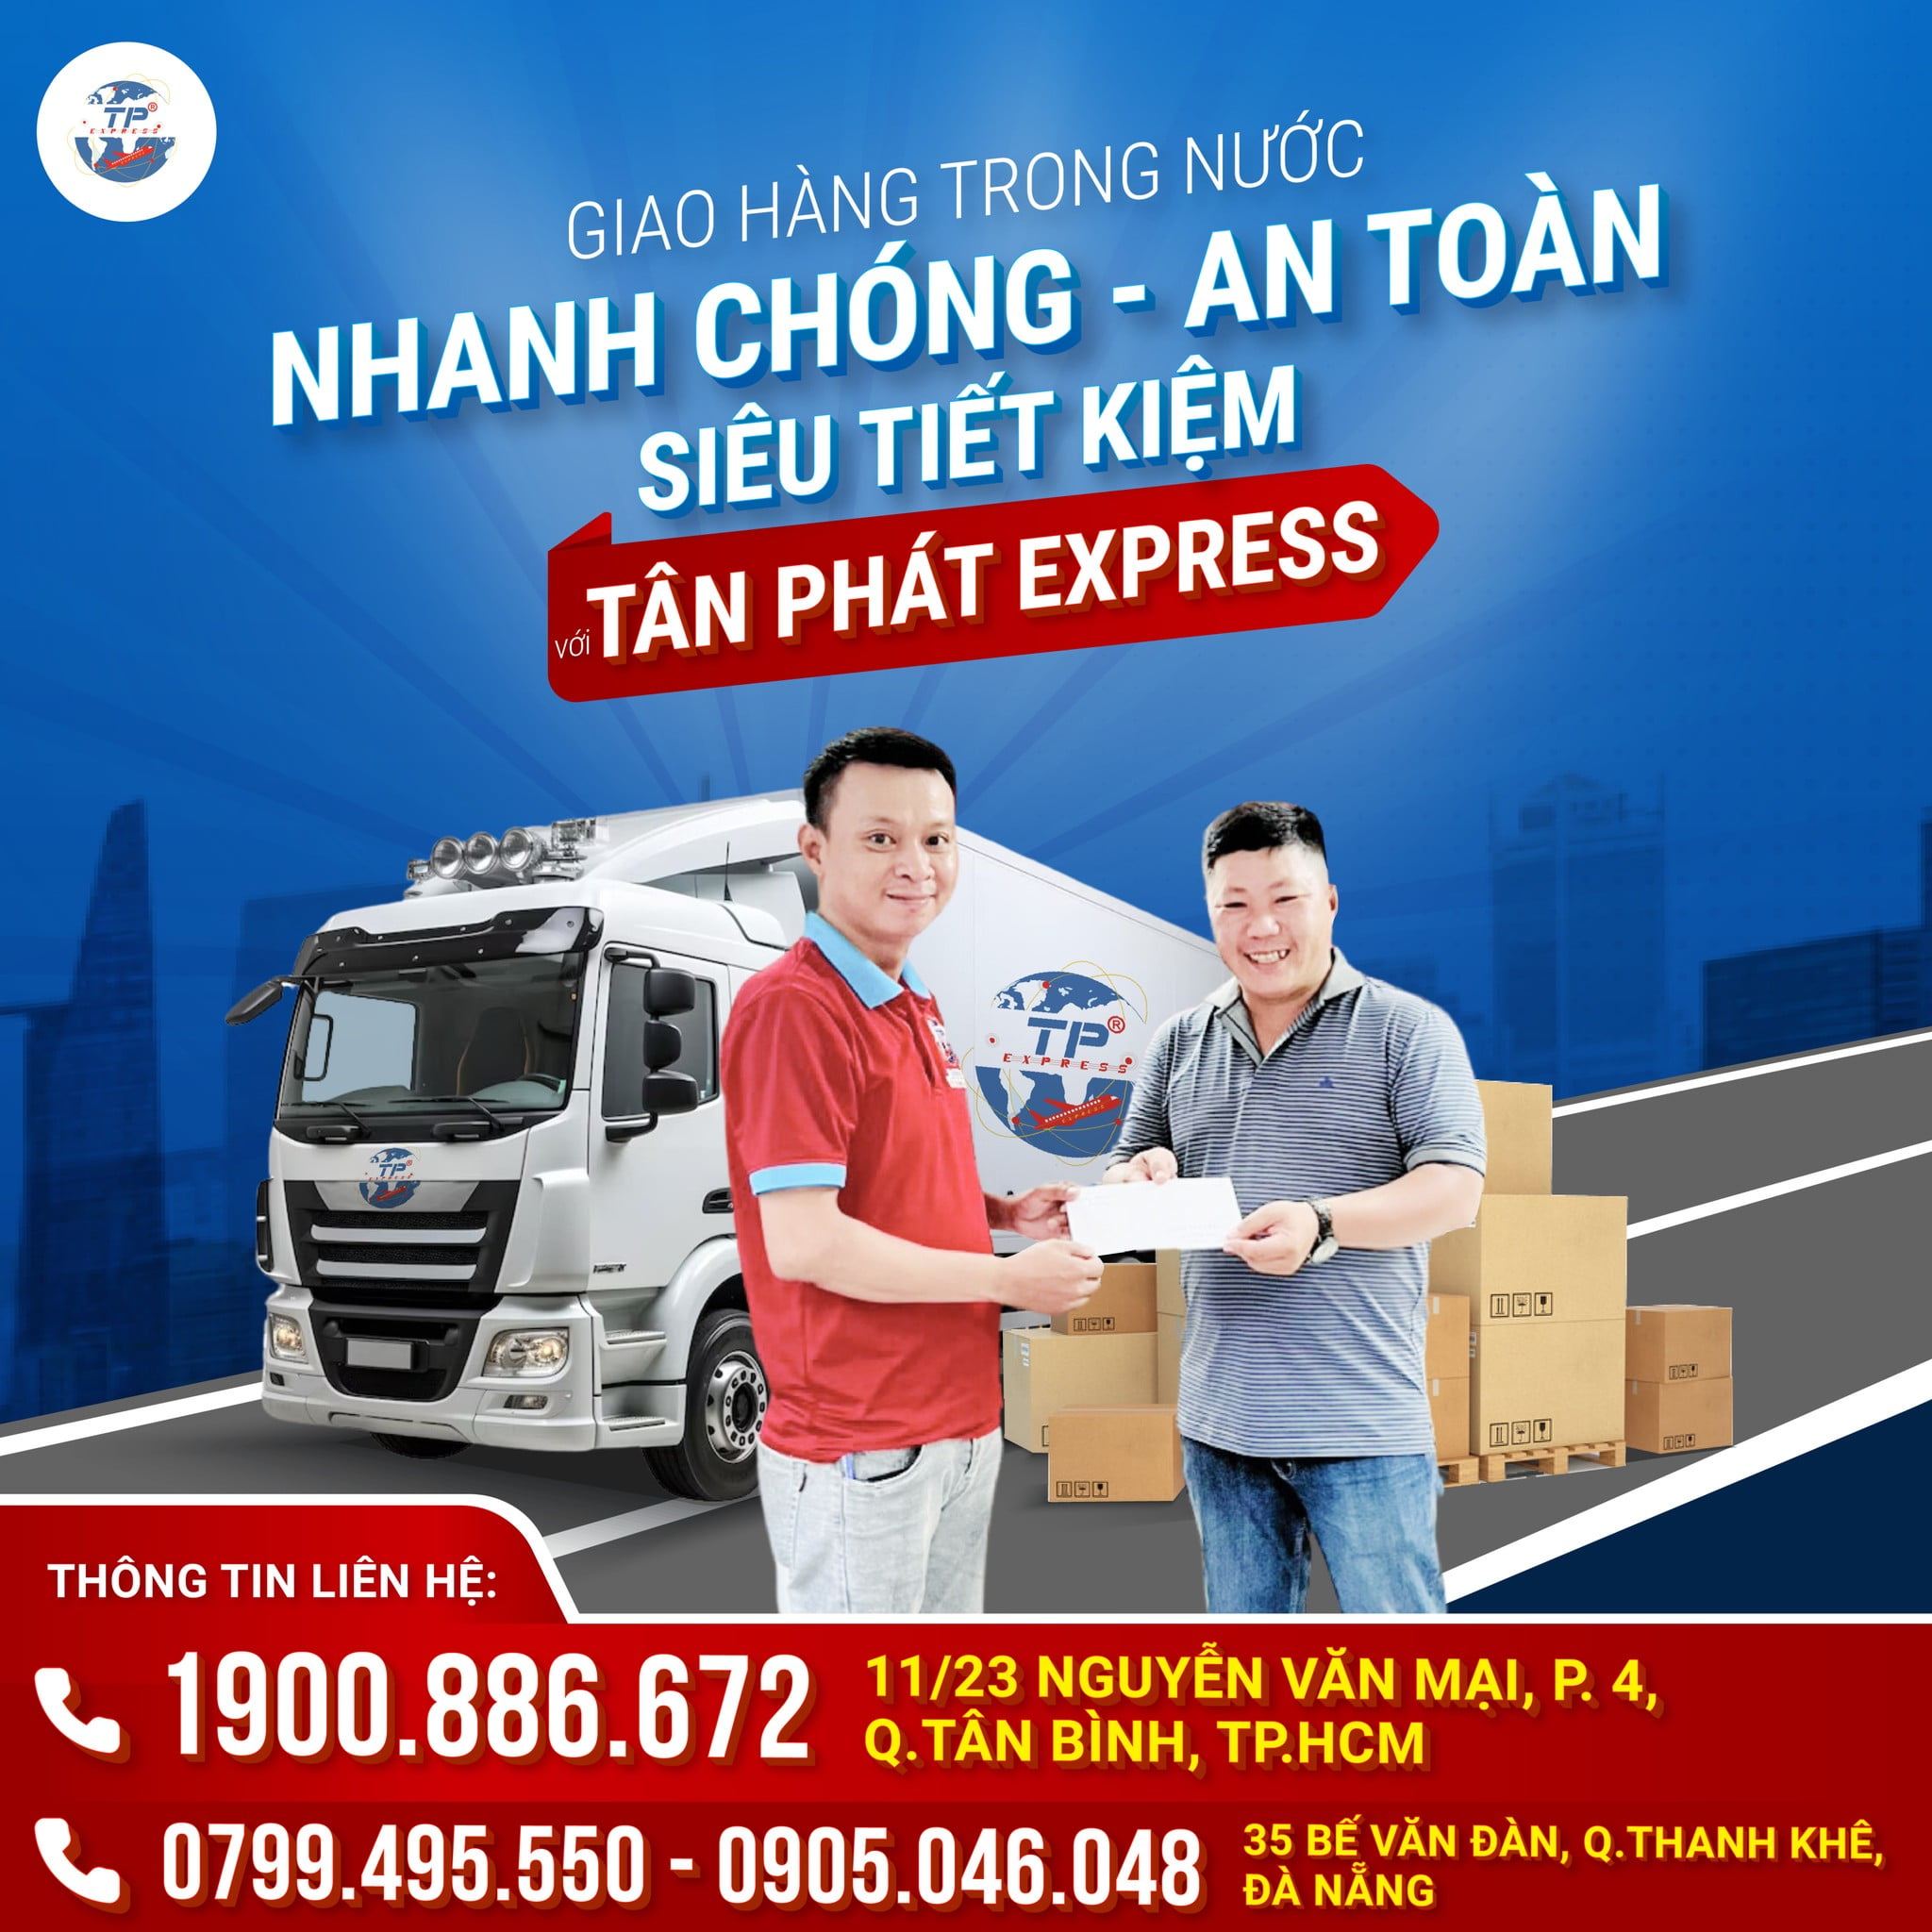 Tân Phát Express là một trong các công ty vận chuyển hàng hóa quốc tế tốt. Tân Phát Express là một trong các công ty vận chuyển hàng hóa quốc tế. Vận chuyển và theo dõi của chuyển phát nhanh quốc tế